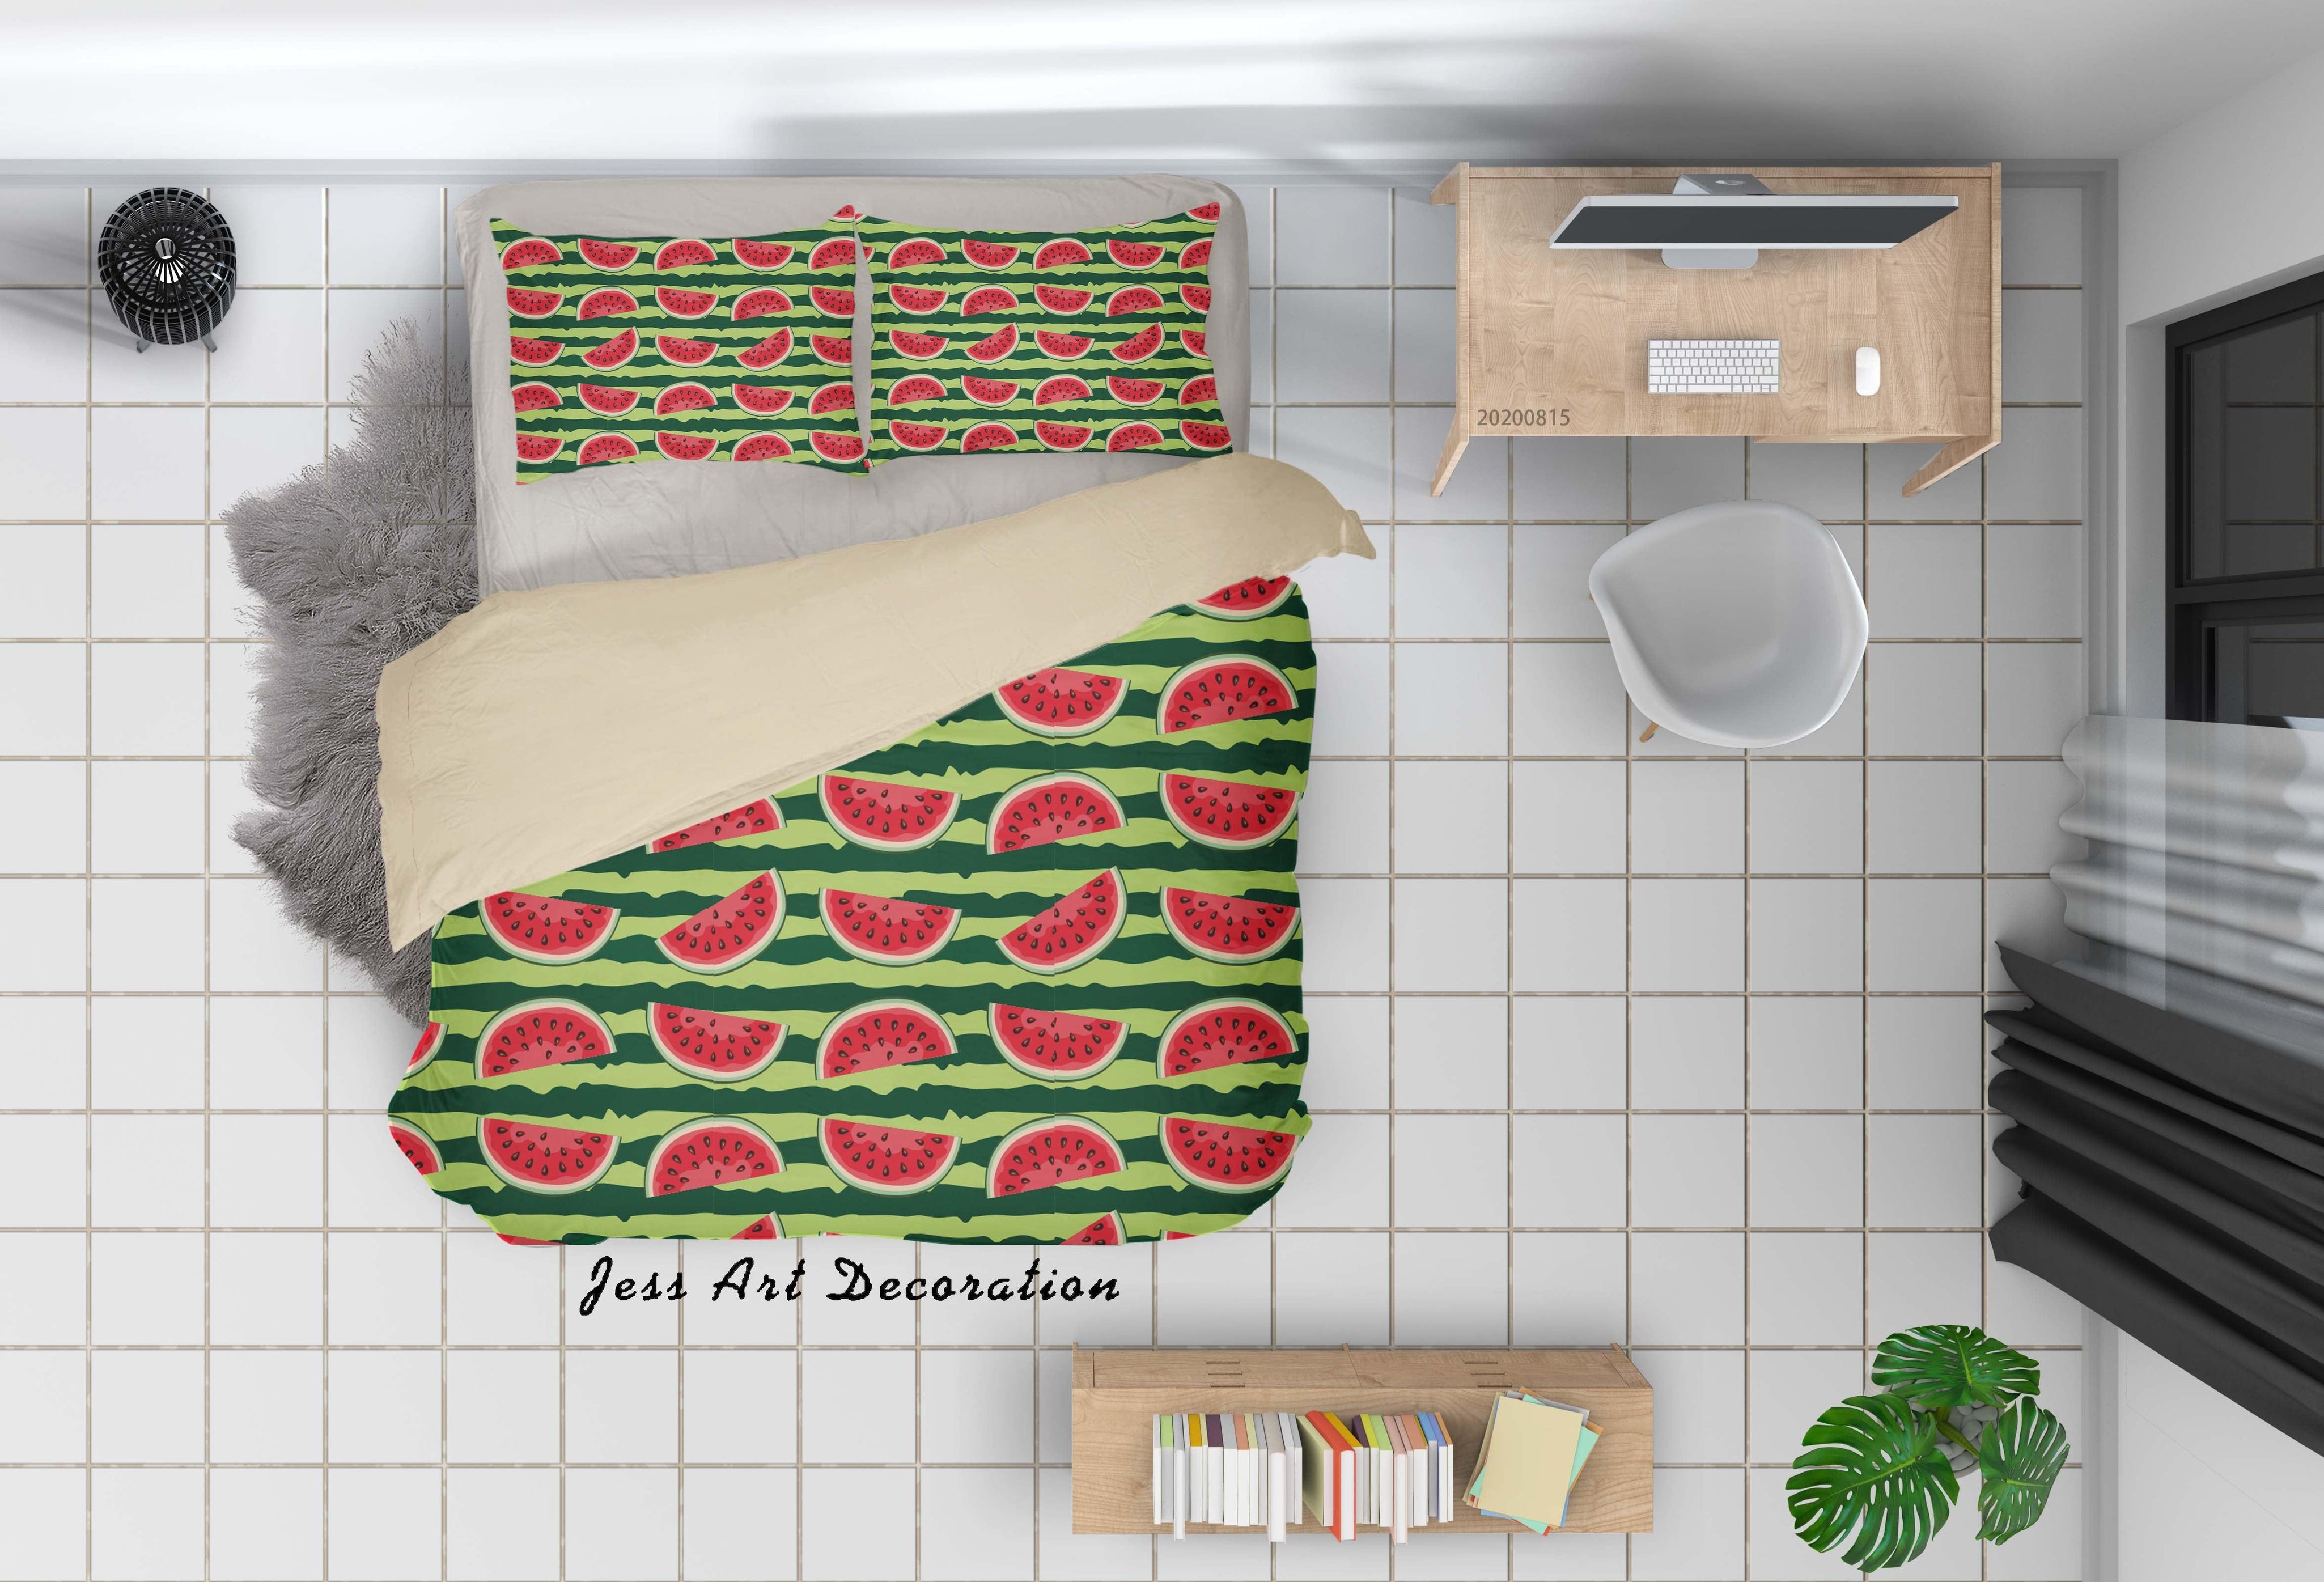 3D Watermelon Fruity Stripe Quilt Cover Set Bedding Set Duvet Cover Pillowcases LXL- Jess Art Decoration